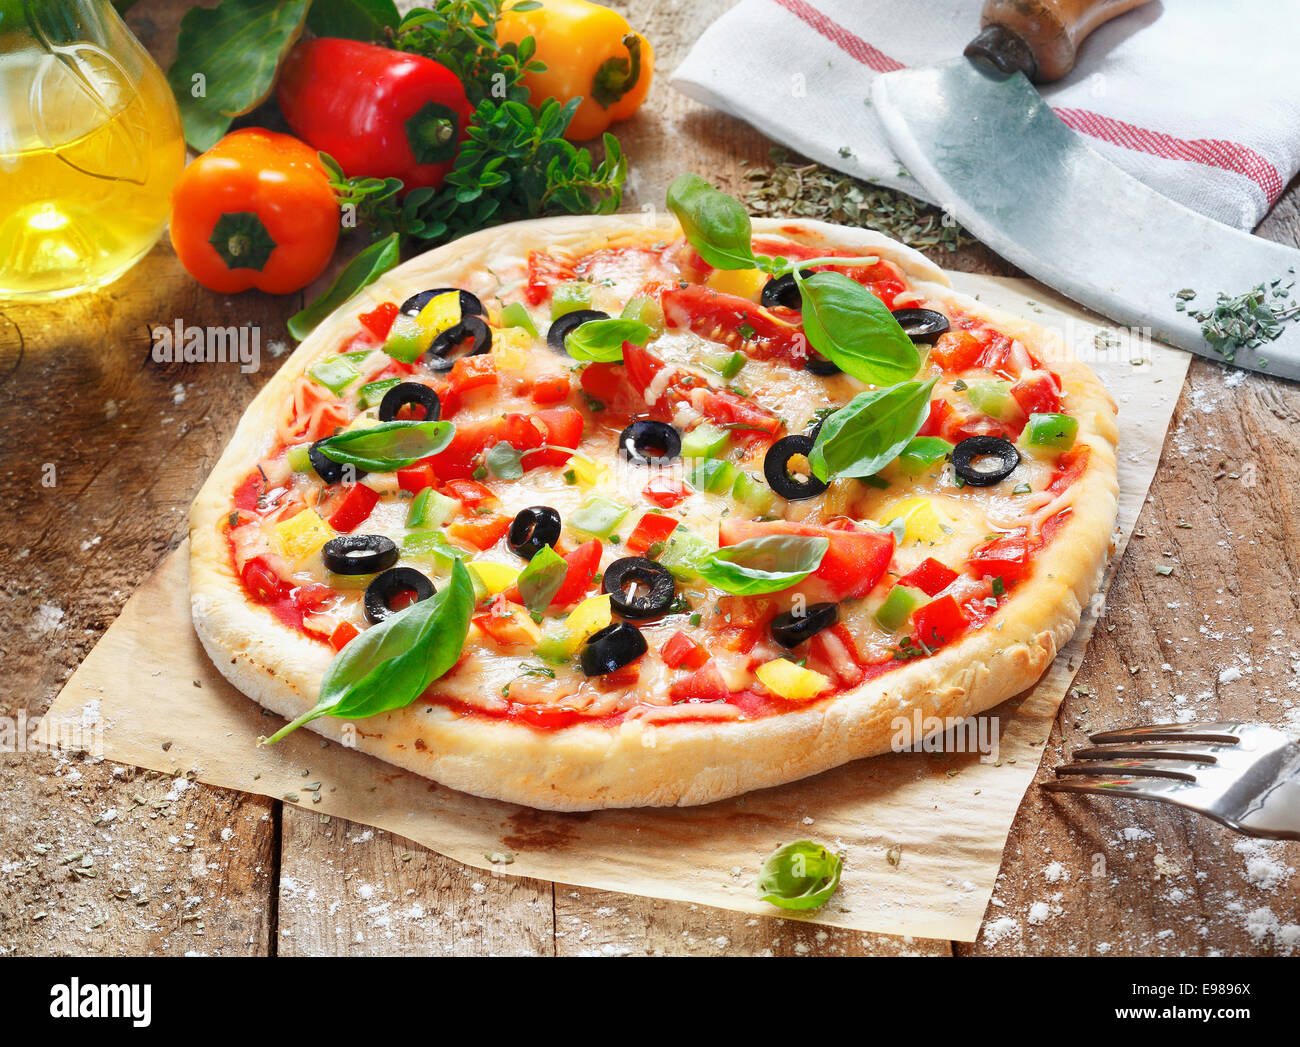 Leckere hausgemachte Pizza mit einem dicken goldenen Sockel belegt mit Käse, Tomaten, Paprika, Oliven und Kräutern Stockfoto